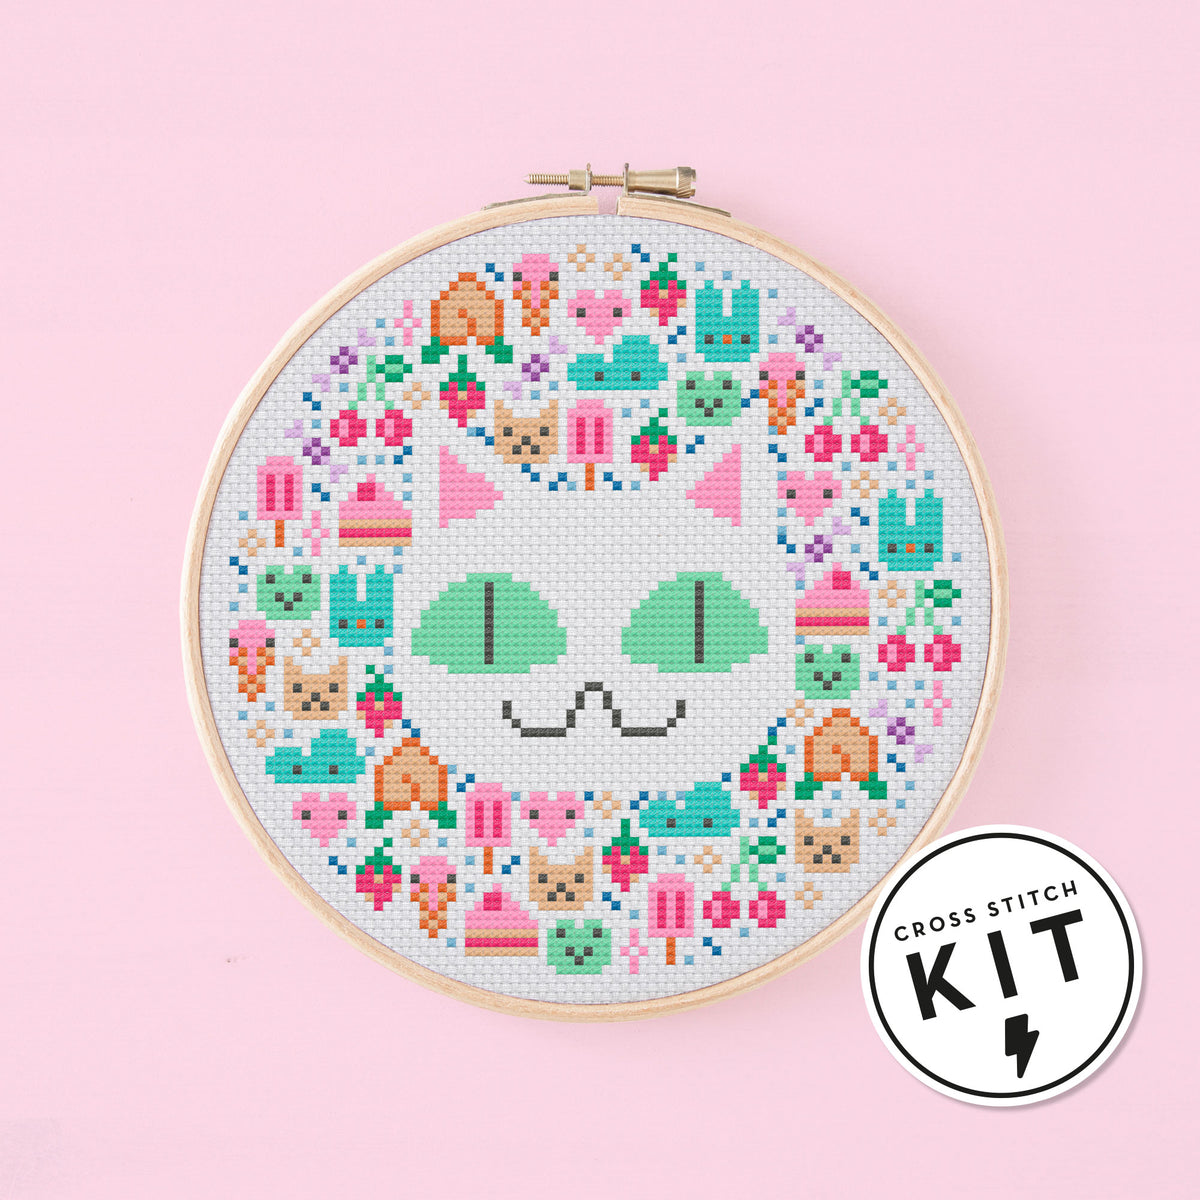 Kittiwake Small Cross Stitch Kits